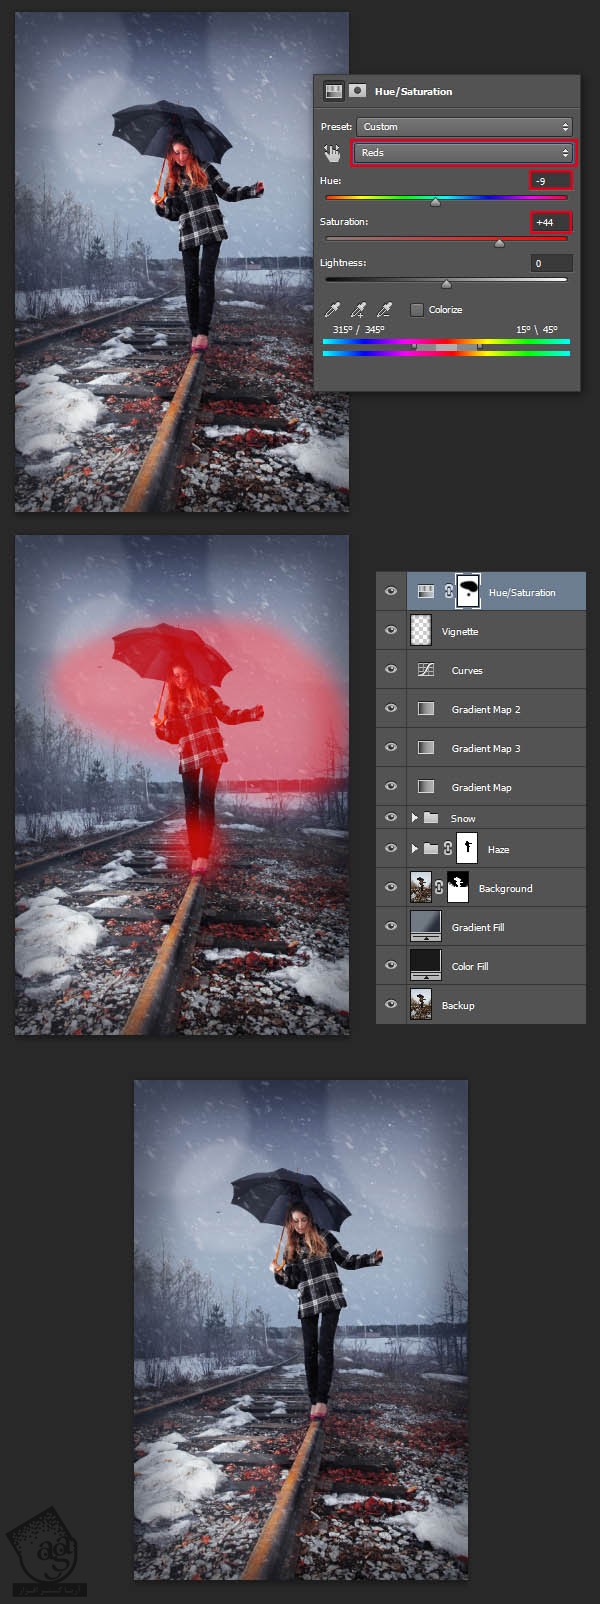 آموزش Photoshop : نحوه اضافه کردن دانه های برف به تصویر